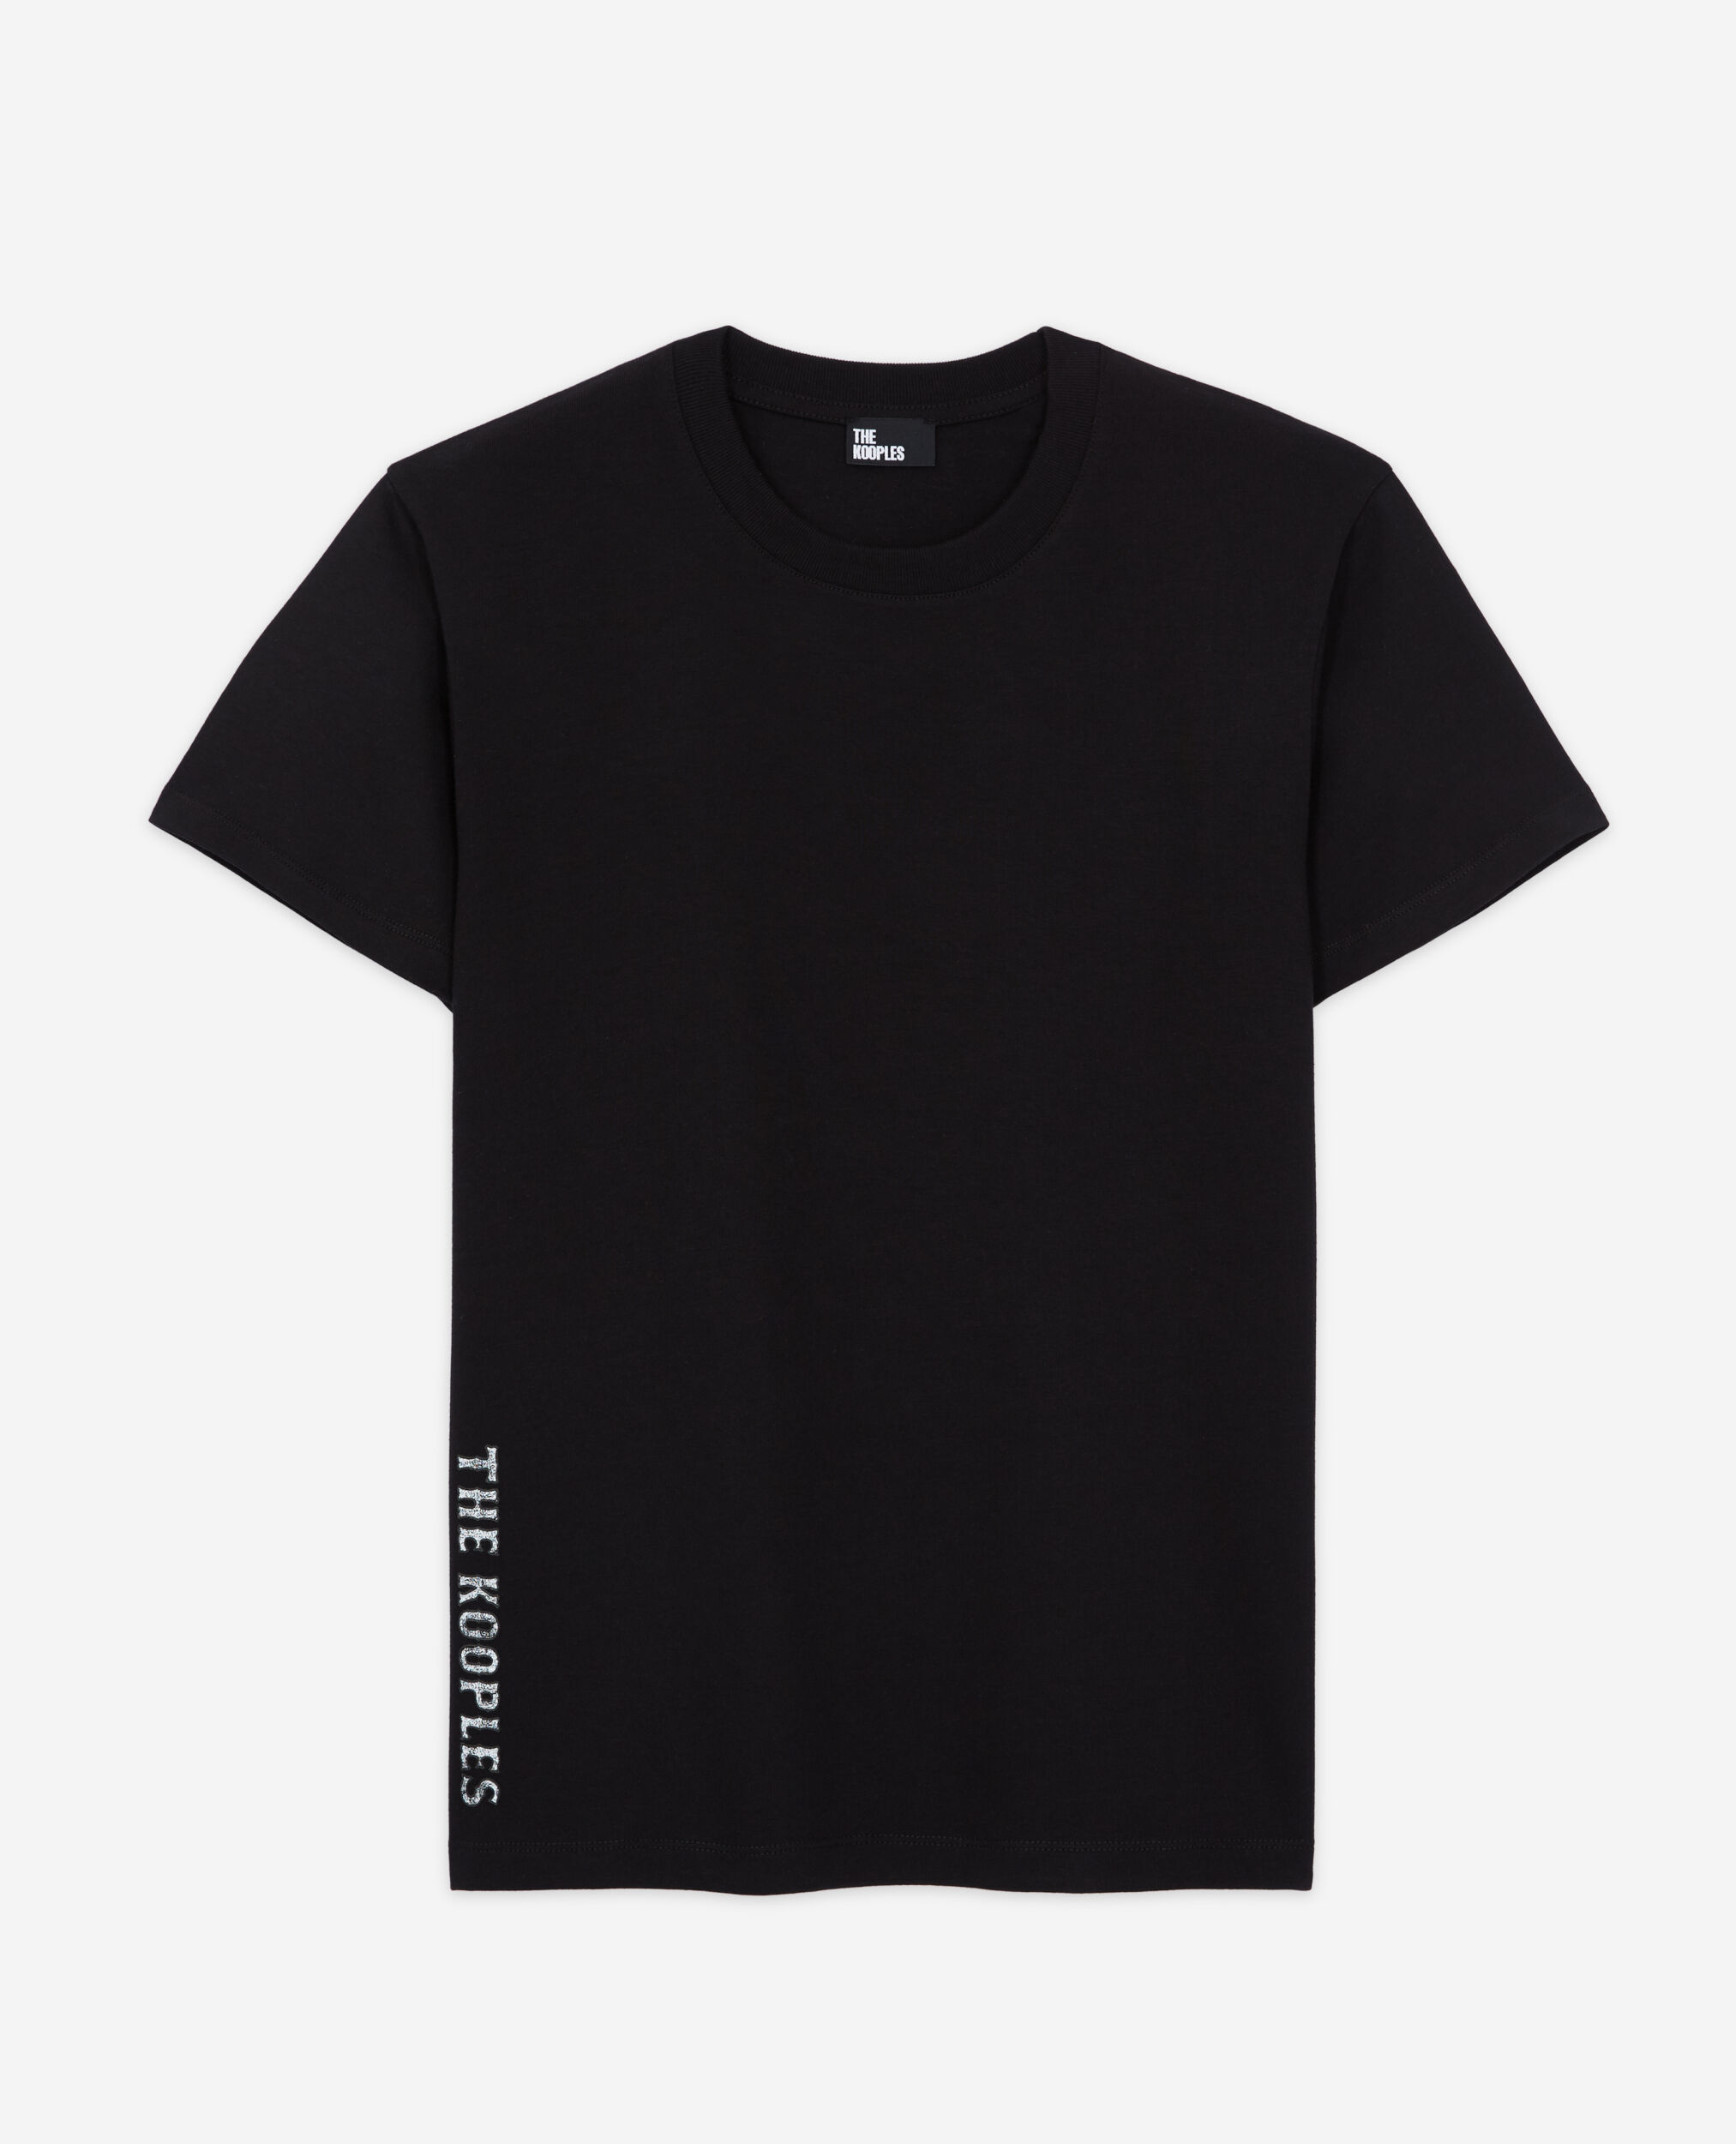 Schwarzes T-Shirt Damen mit Siebdruck, BLACK, hi-res image number null